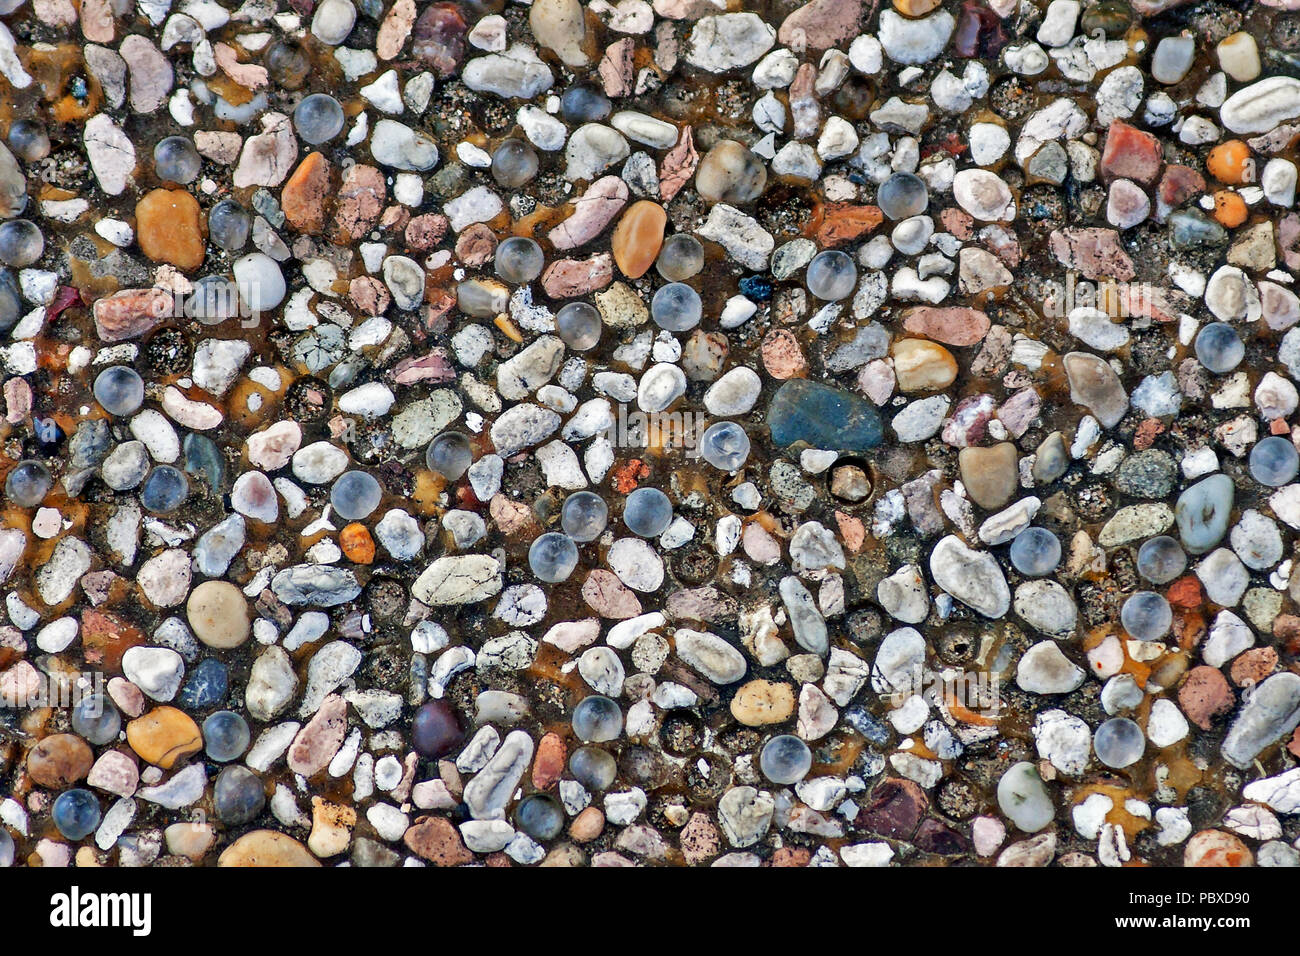 Eine Vielzahl von kleinen Steinen und Kies in verschiedenen Formen und Farben crammed zusammen in eine konkrete Basis Pebble schneidigen zu bilden. Stockfoto